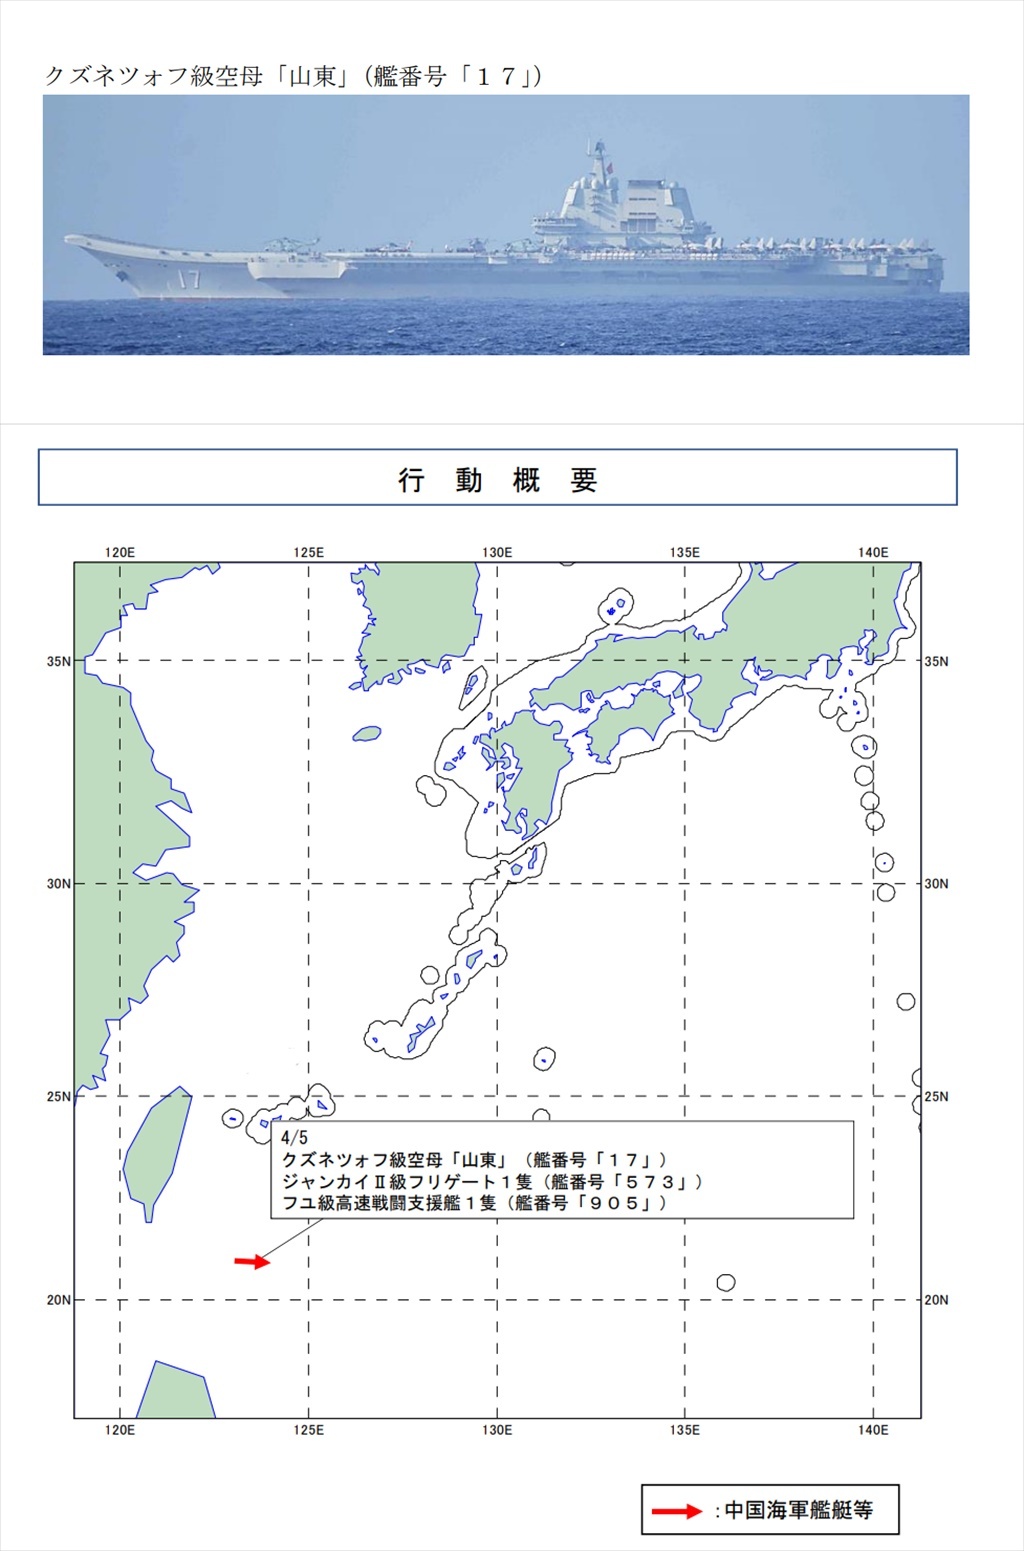 蔡麥會／日本首度發現共軍山東艦在西太平洋